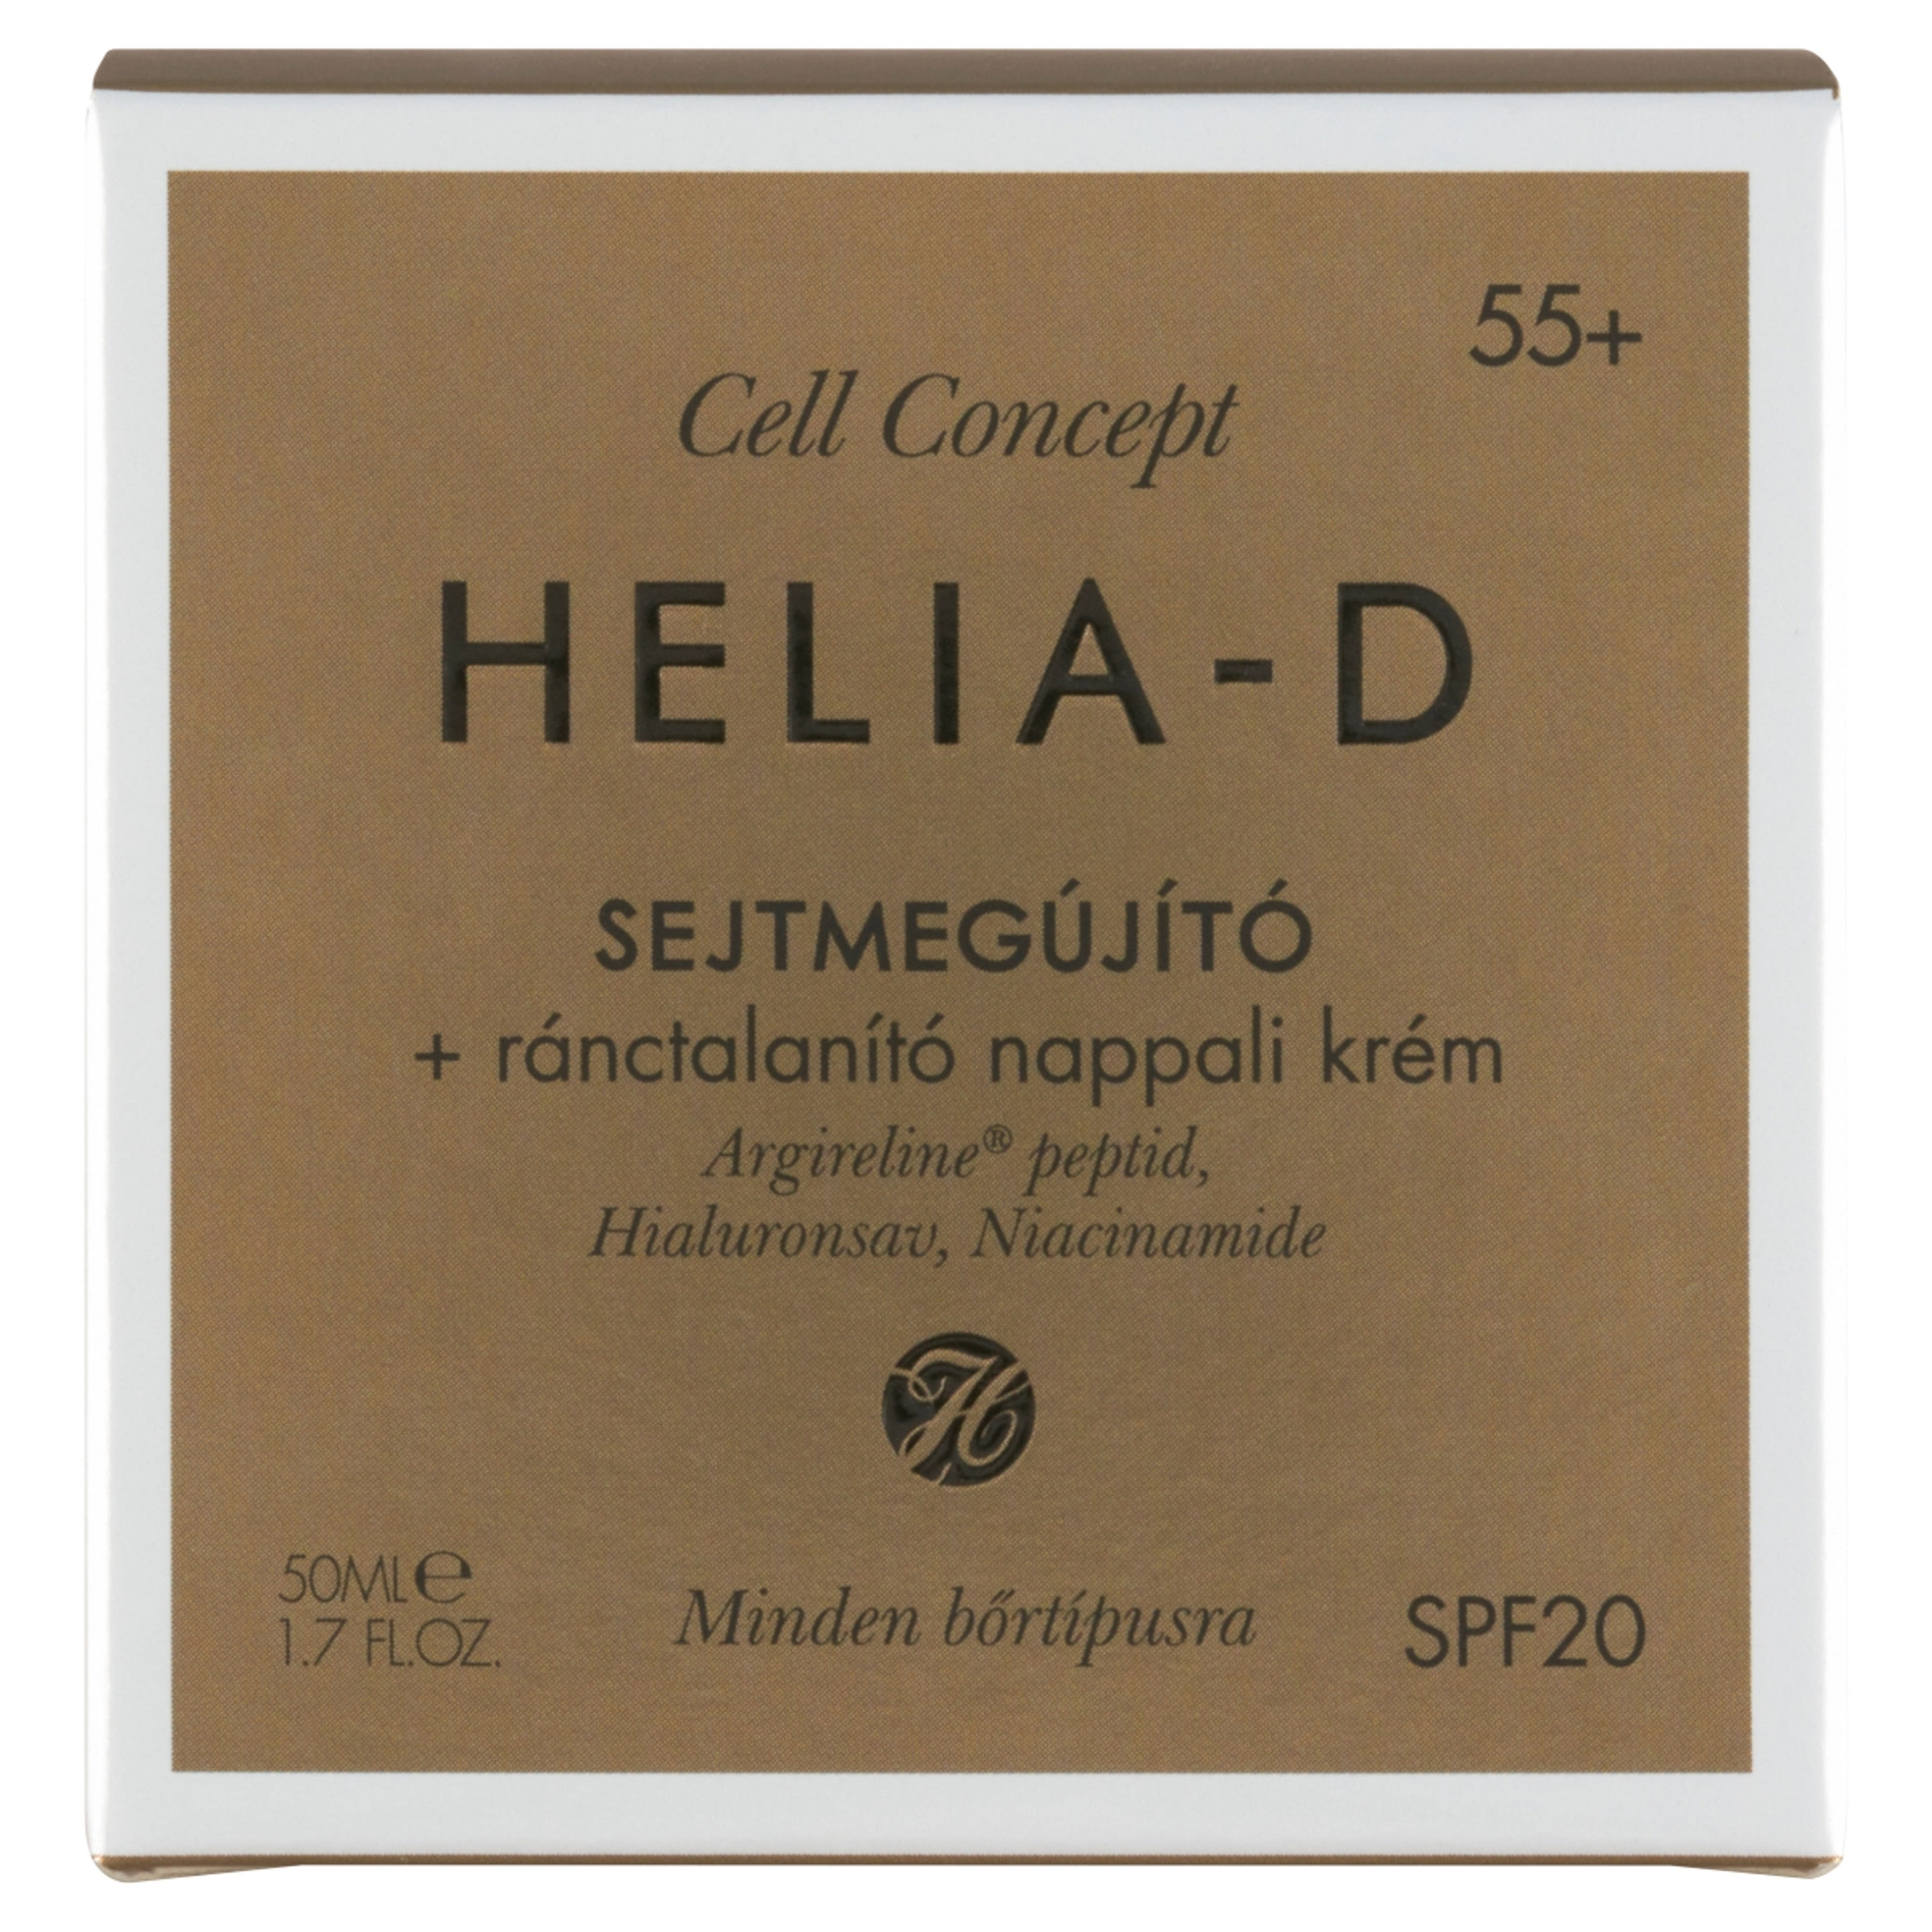 Helia-D Cell Concept sejtmegújító ránctalanító nappali krém 55+ - 50 ml-1